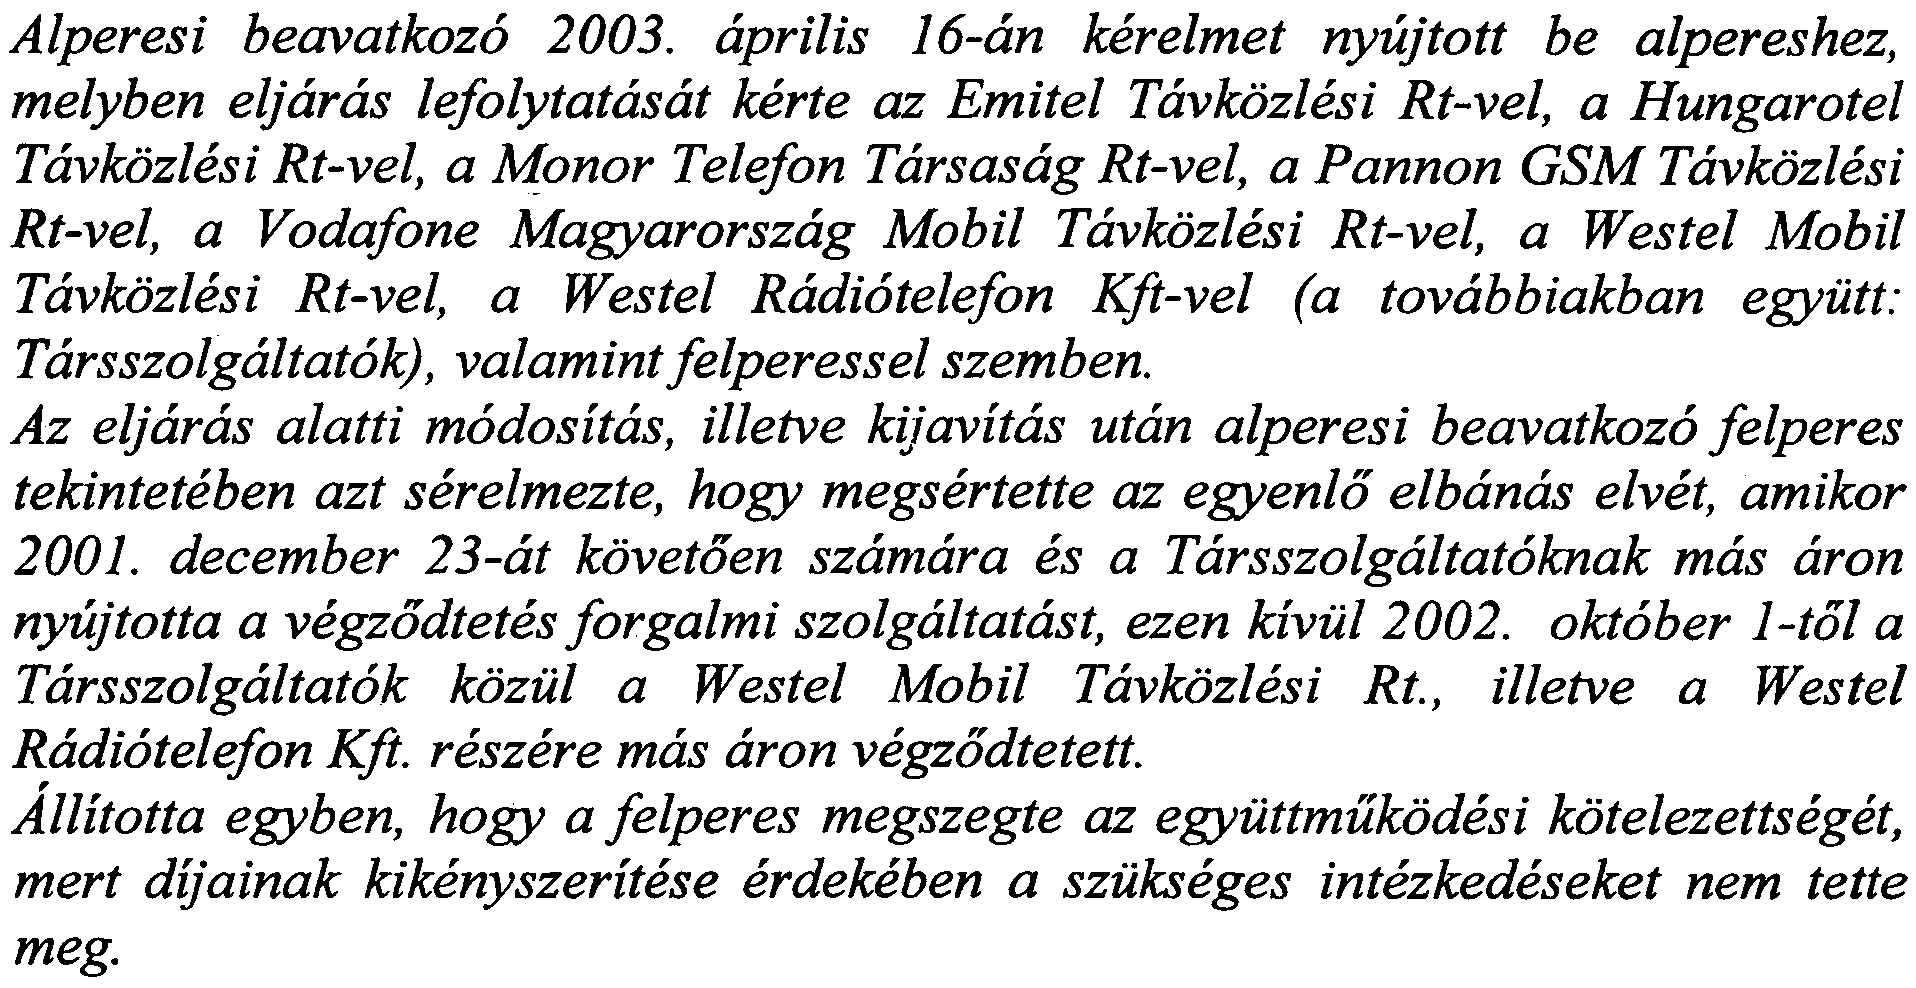 aprilis 16-an kerelmet nyujtott be alpereshez, melyben eljaras lefolytatasat kerte az Emitel Tavkozlesi Rt-vel, a Hungarotel Tavkozlesi Rt-vel, a Monor Telefon Tarsasag Rt-vel, a Pannon GSM